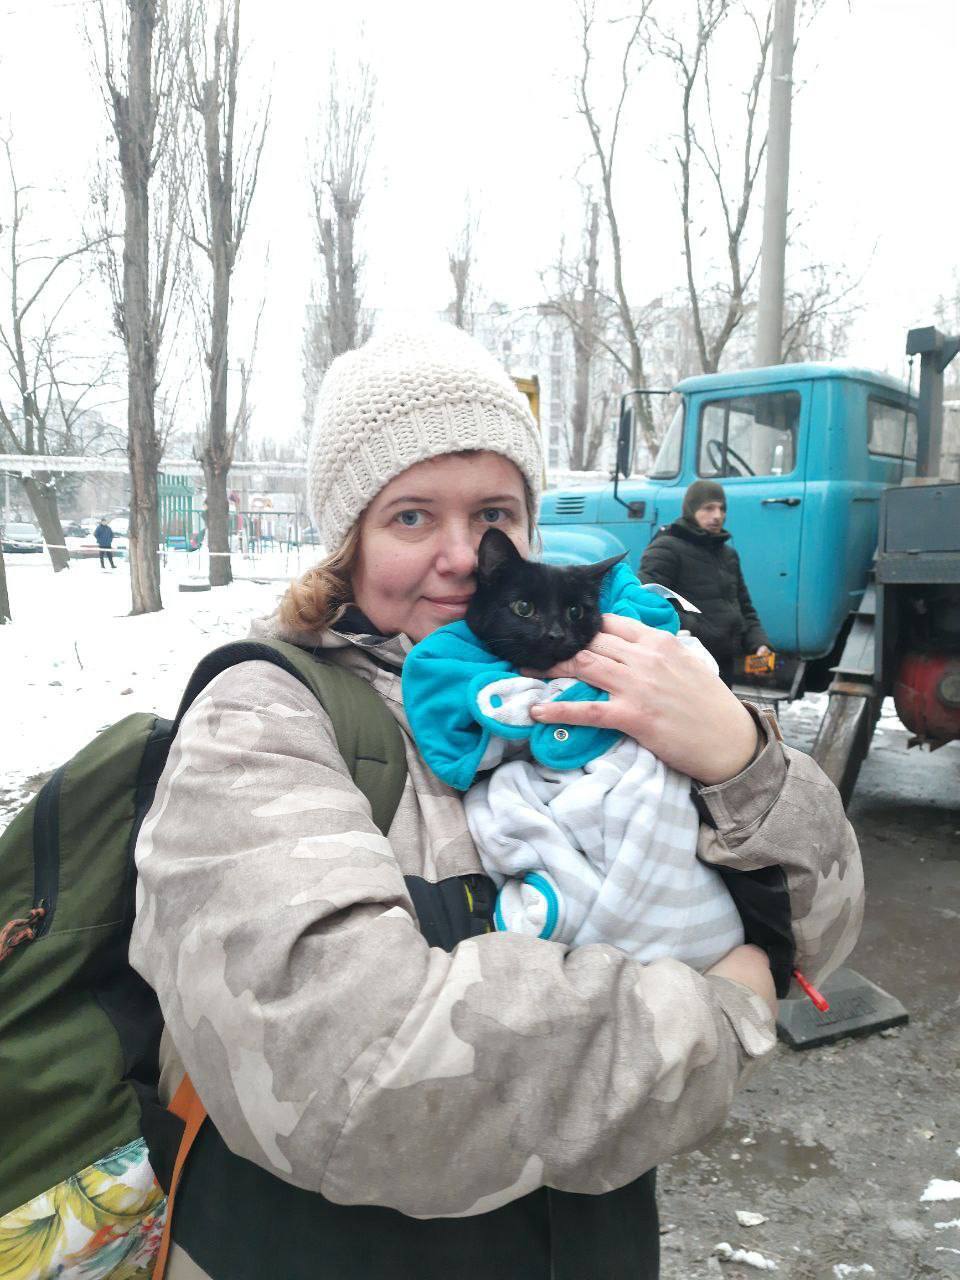 Чекала більше 2 тижнів на порятунок: у Дніпрі повернули господарям кішку із зруйнованого російським ударом будинку. Фото і відео 